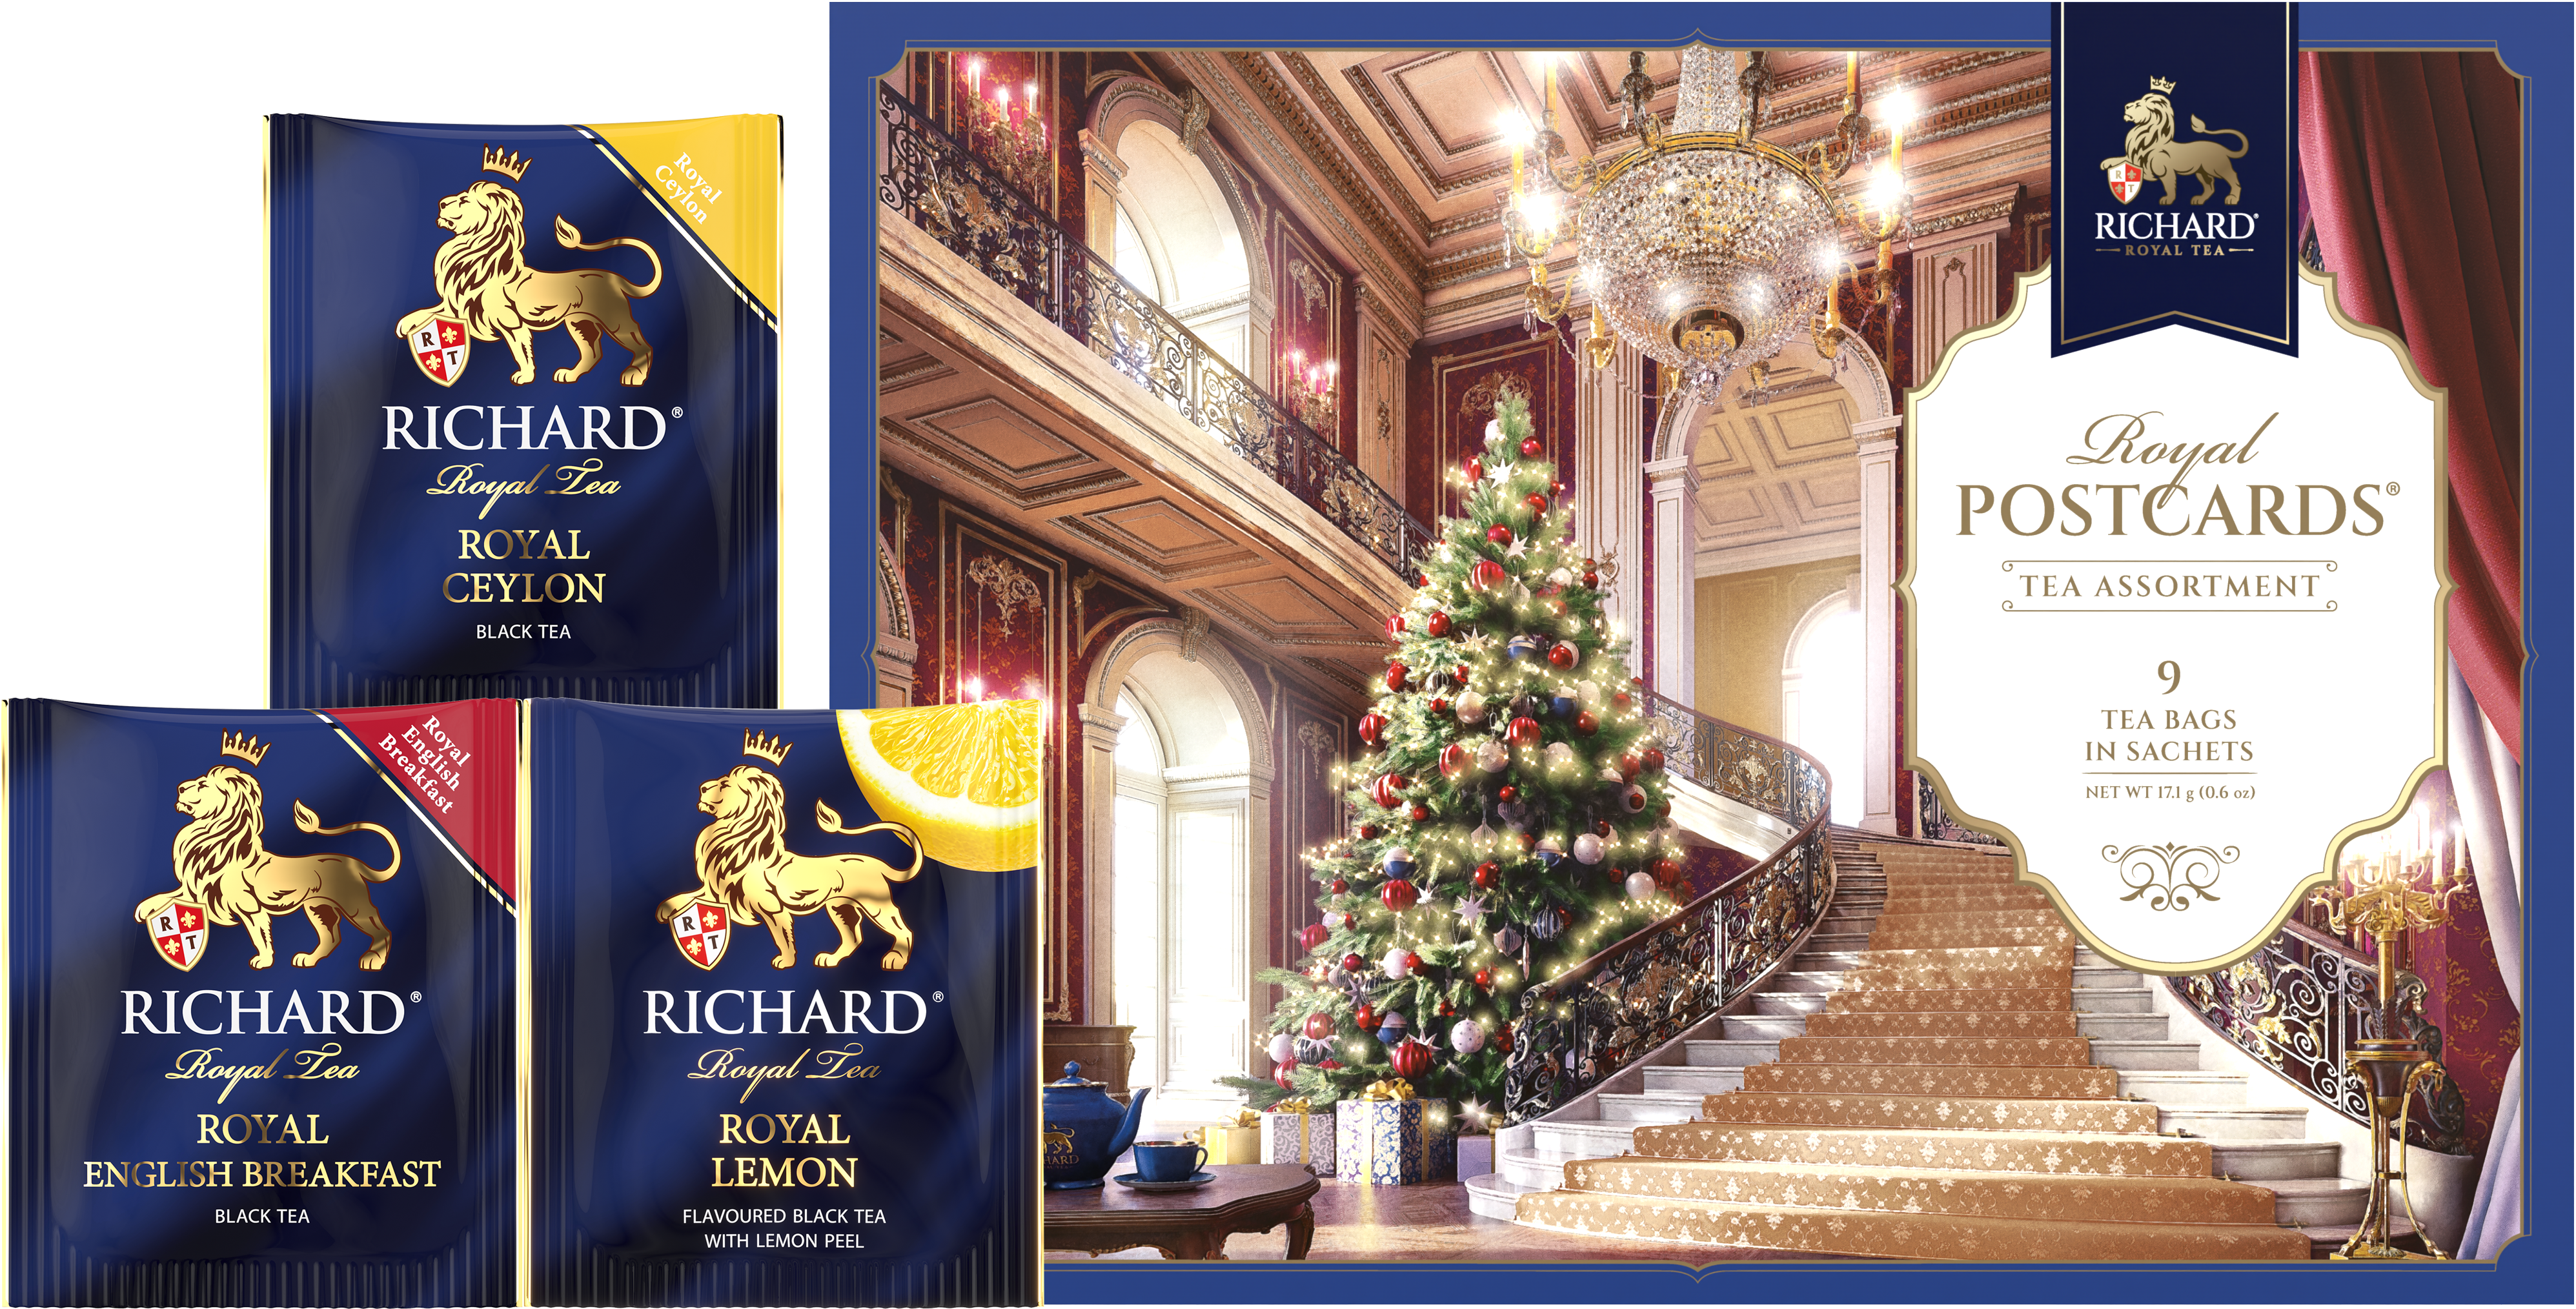 Richard Royal Királyi Képeslap, Karácsonyi válogatás - Kék, filteres fekete tea-válogatás, 17,1g